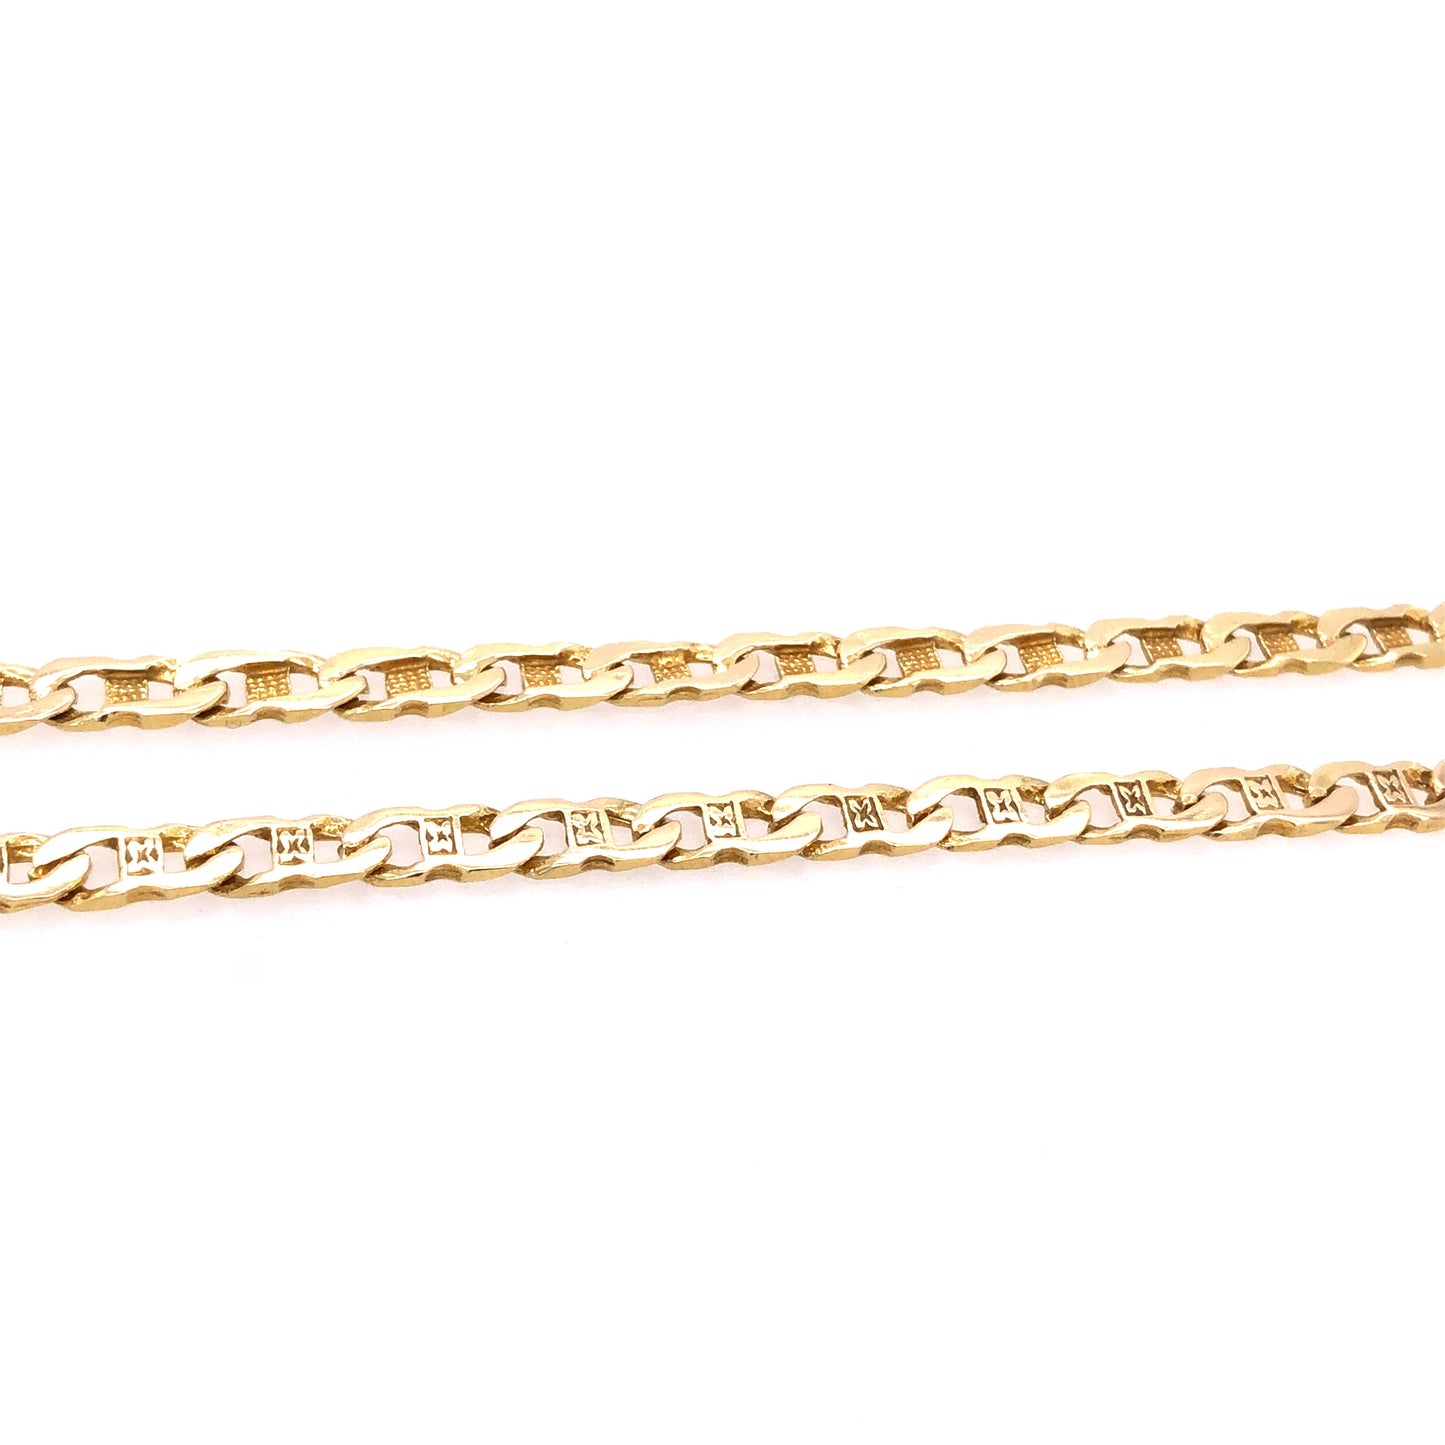 Halskette Gold 585 / 14k Stäbchen-panzerkette Goldkette